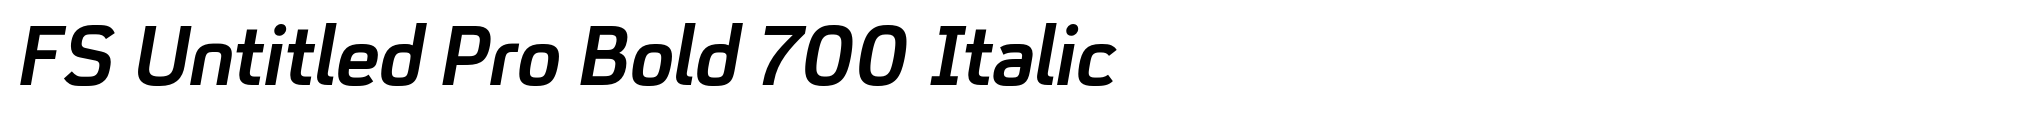 FS Untitled Pro Bold 700 Italic image